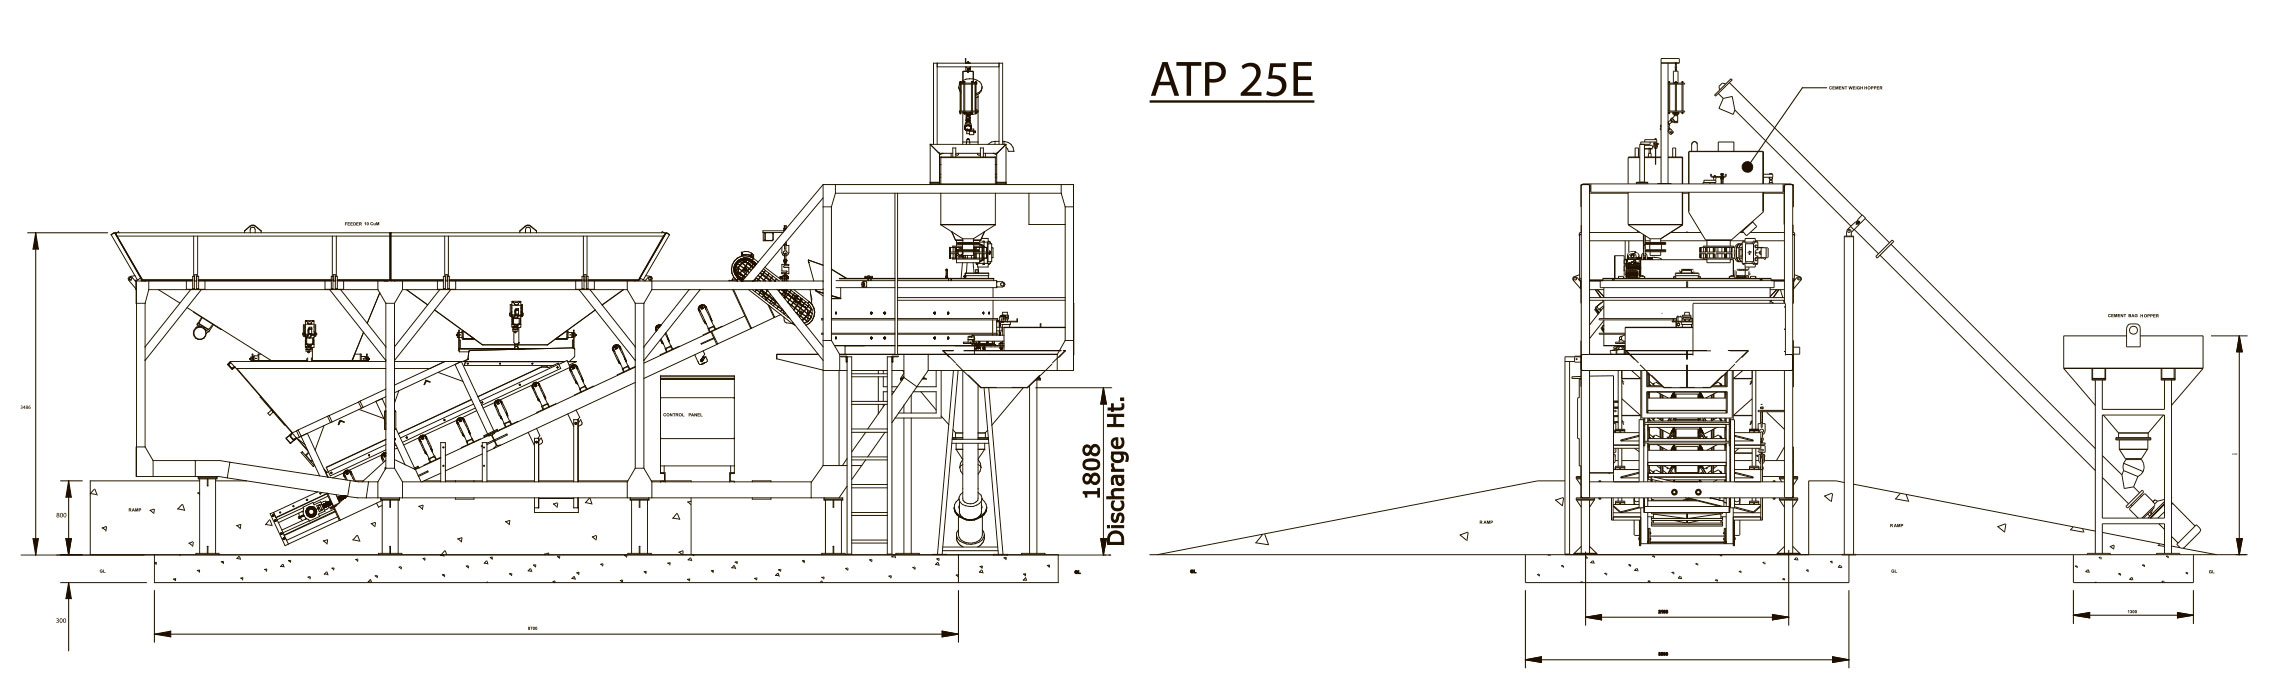 Apollo Infratech ATP 25E